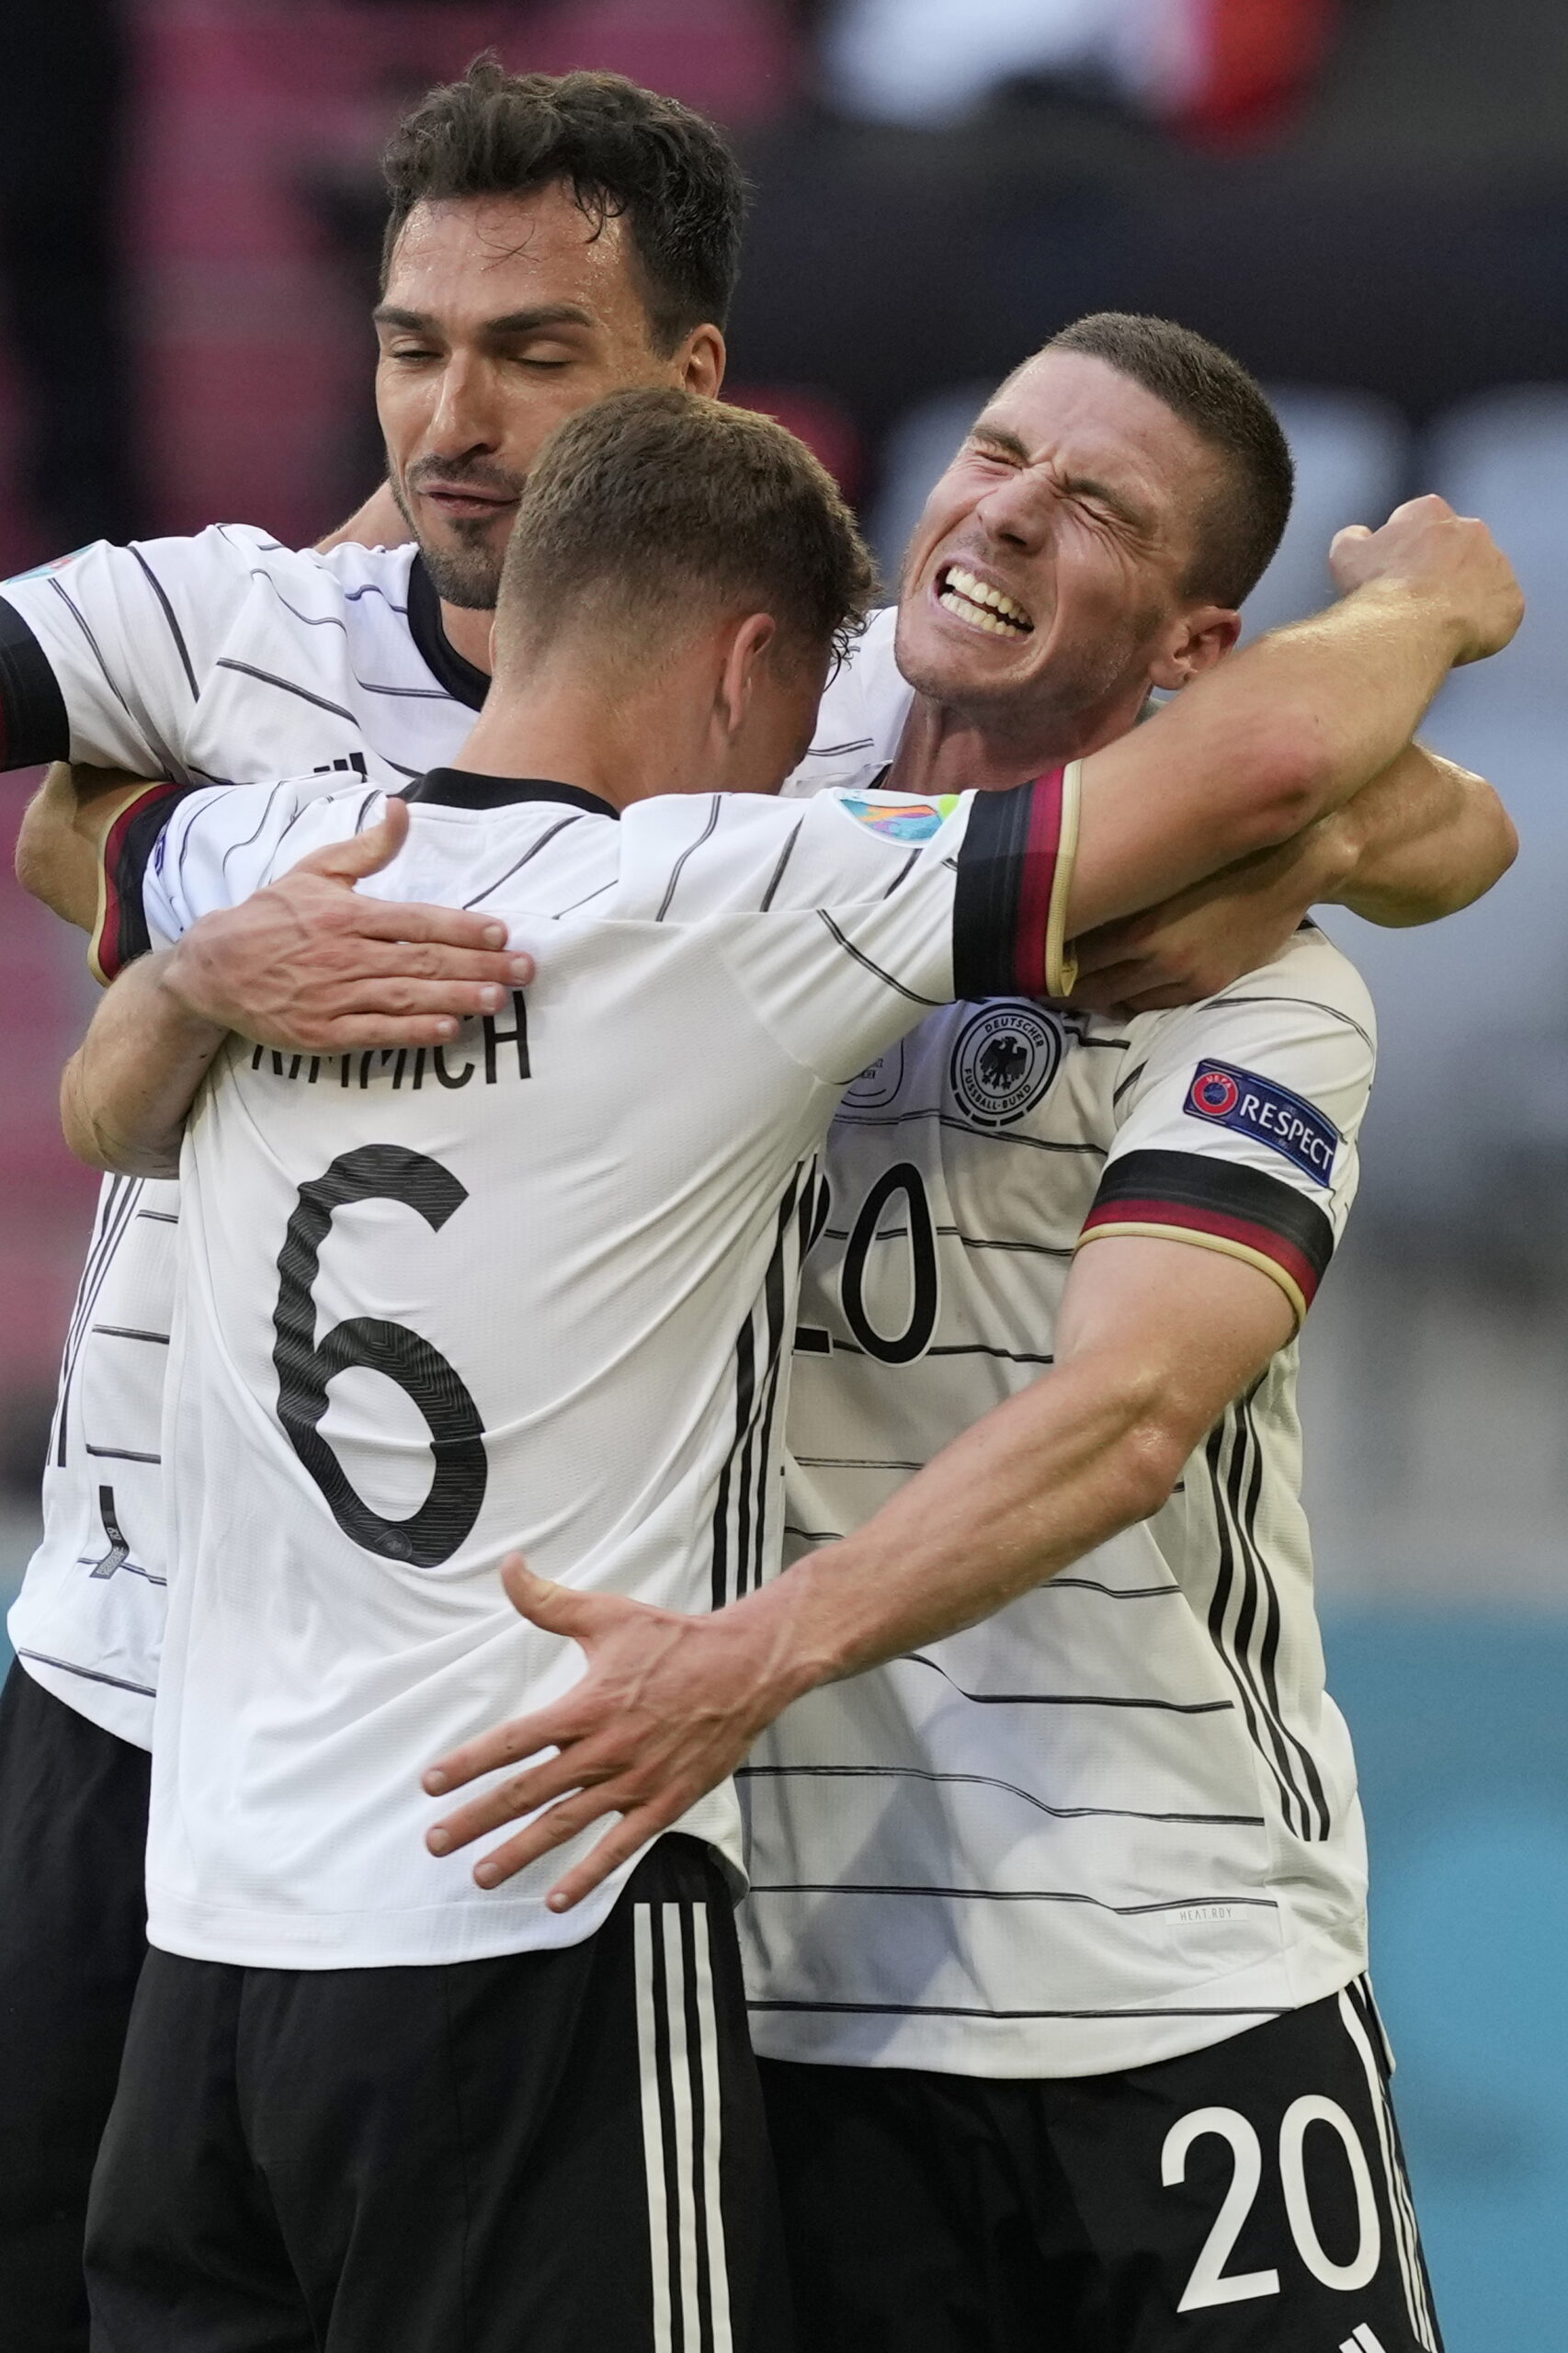 Euro 2020, Πορτογαλία - Γερμανία 2-4: Επιβλητική εμφάνιση από τους Γερμανούς και "φωτιά" στον όμιλο